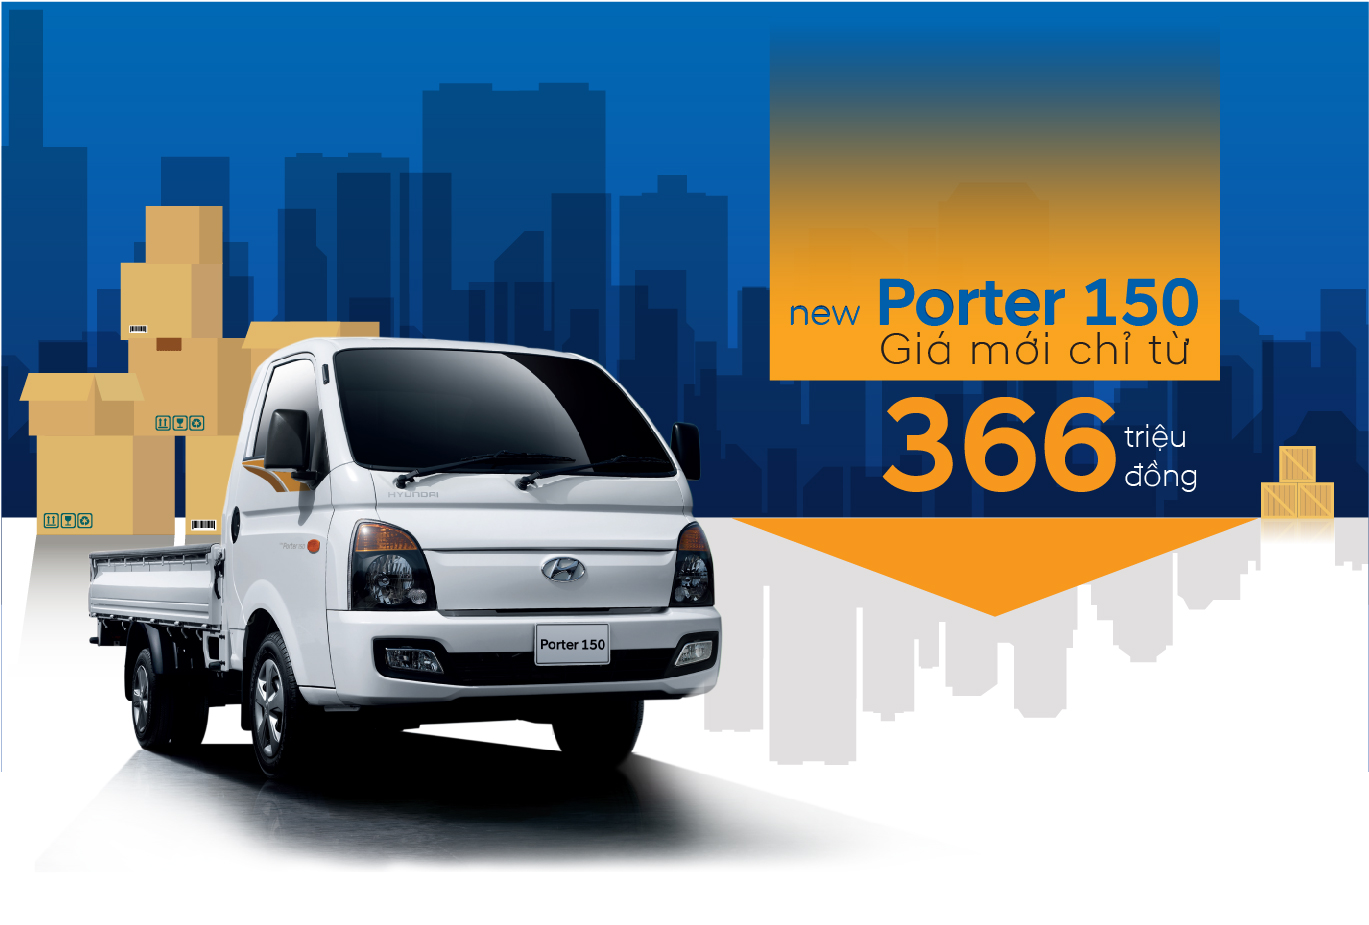 Hyundai Thành Công khuyến mại cho Solati và điều chỉnh giá bán lẻ New Porter H150